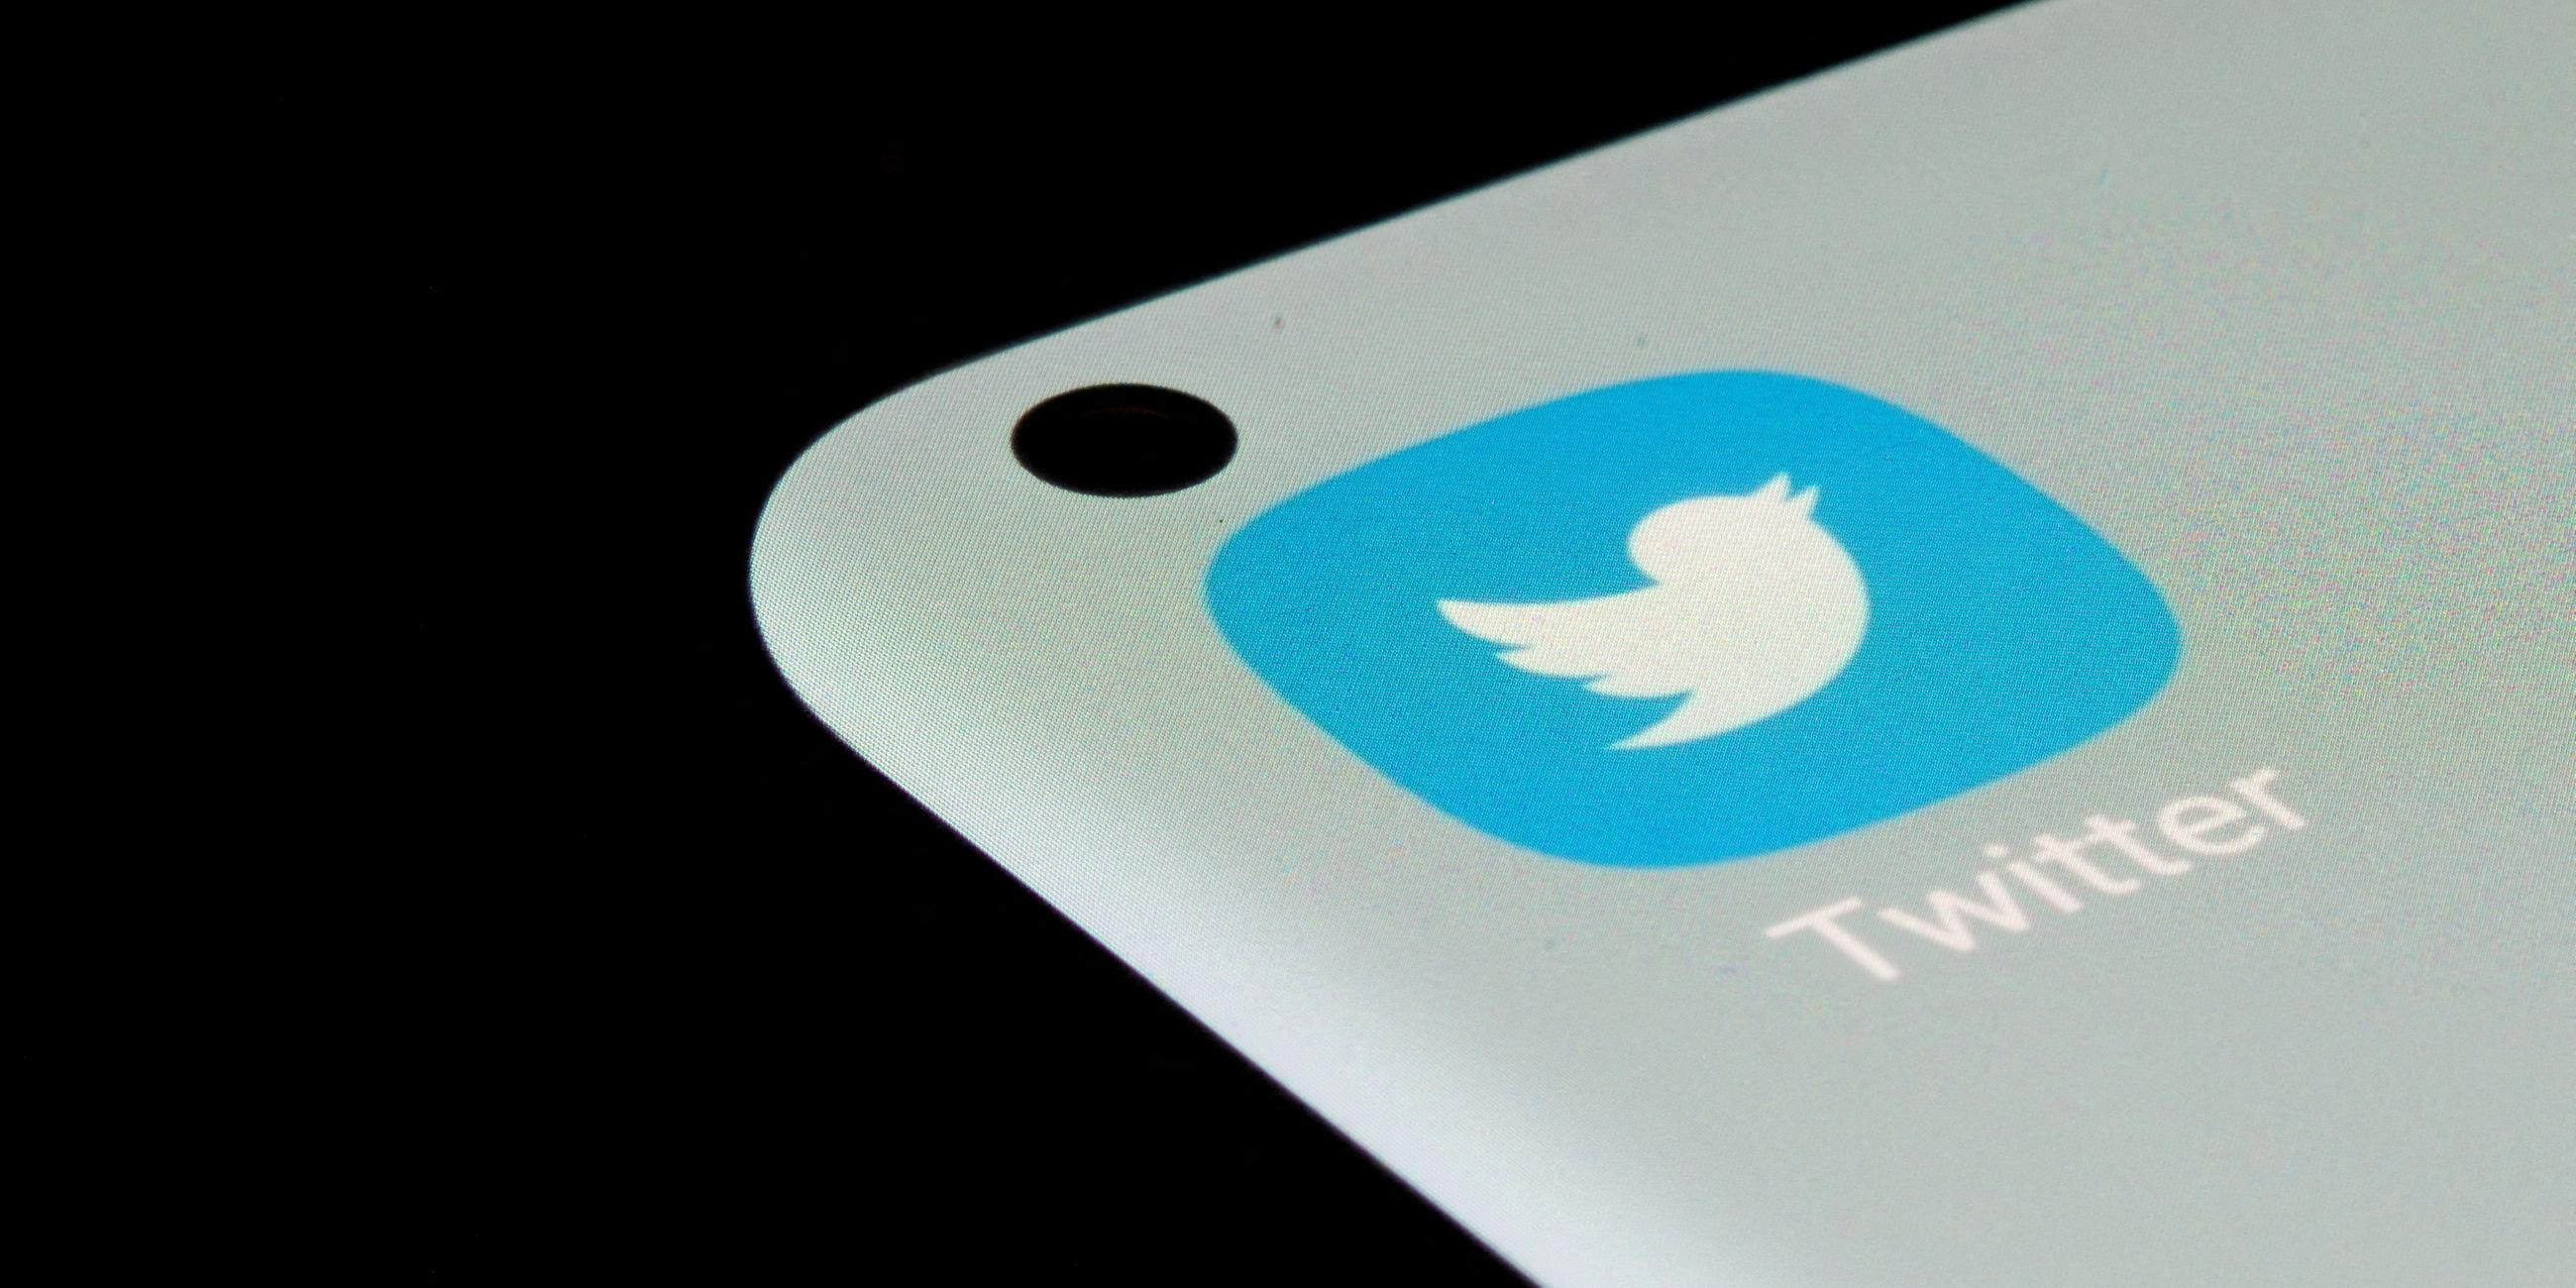 Das blaue Icon der Twitter-App mit dem ikonischen weißen Vogel darauf ist auf einem Smartphone-Display zu sehen.